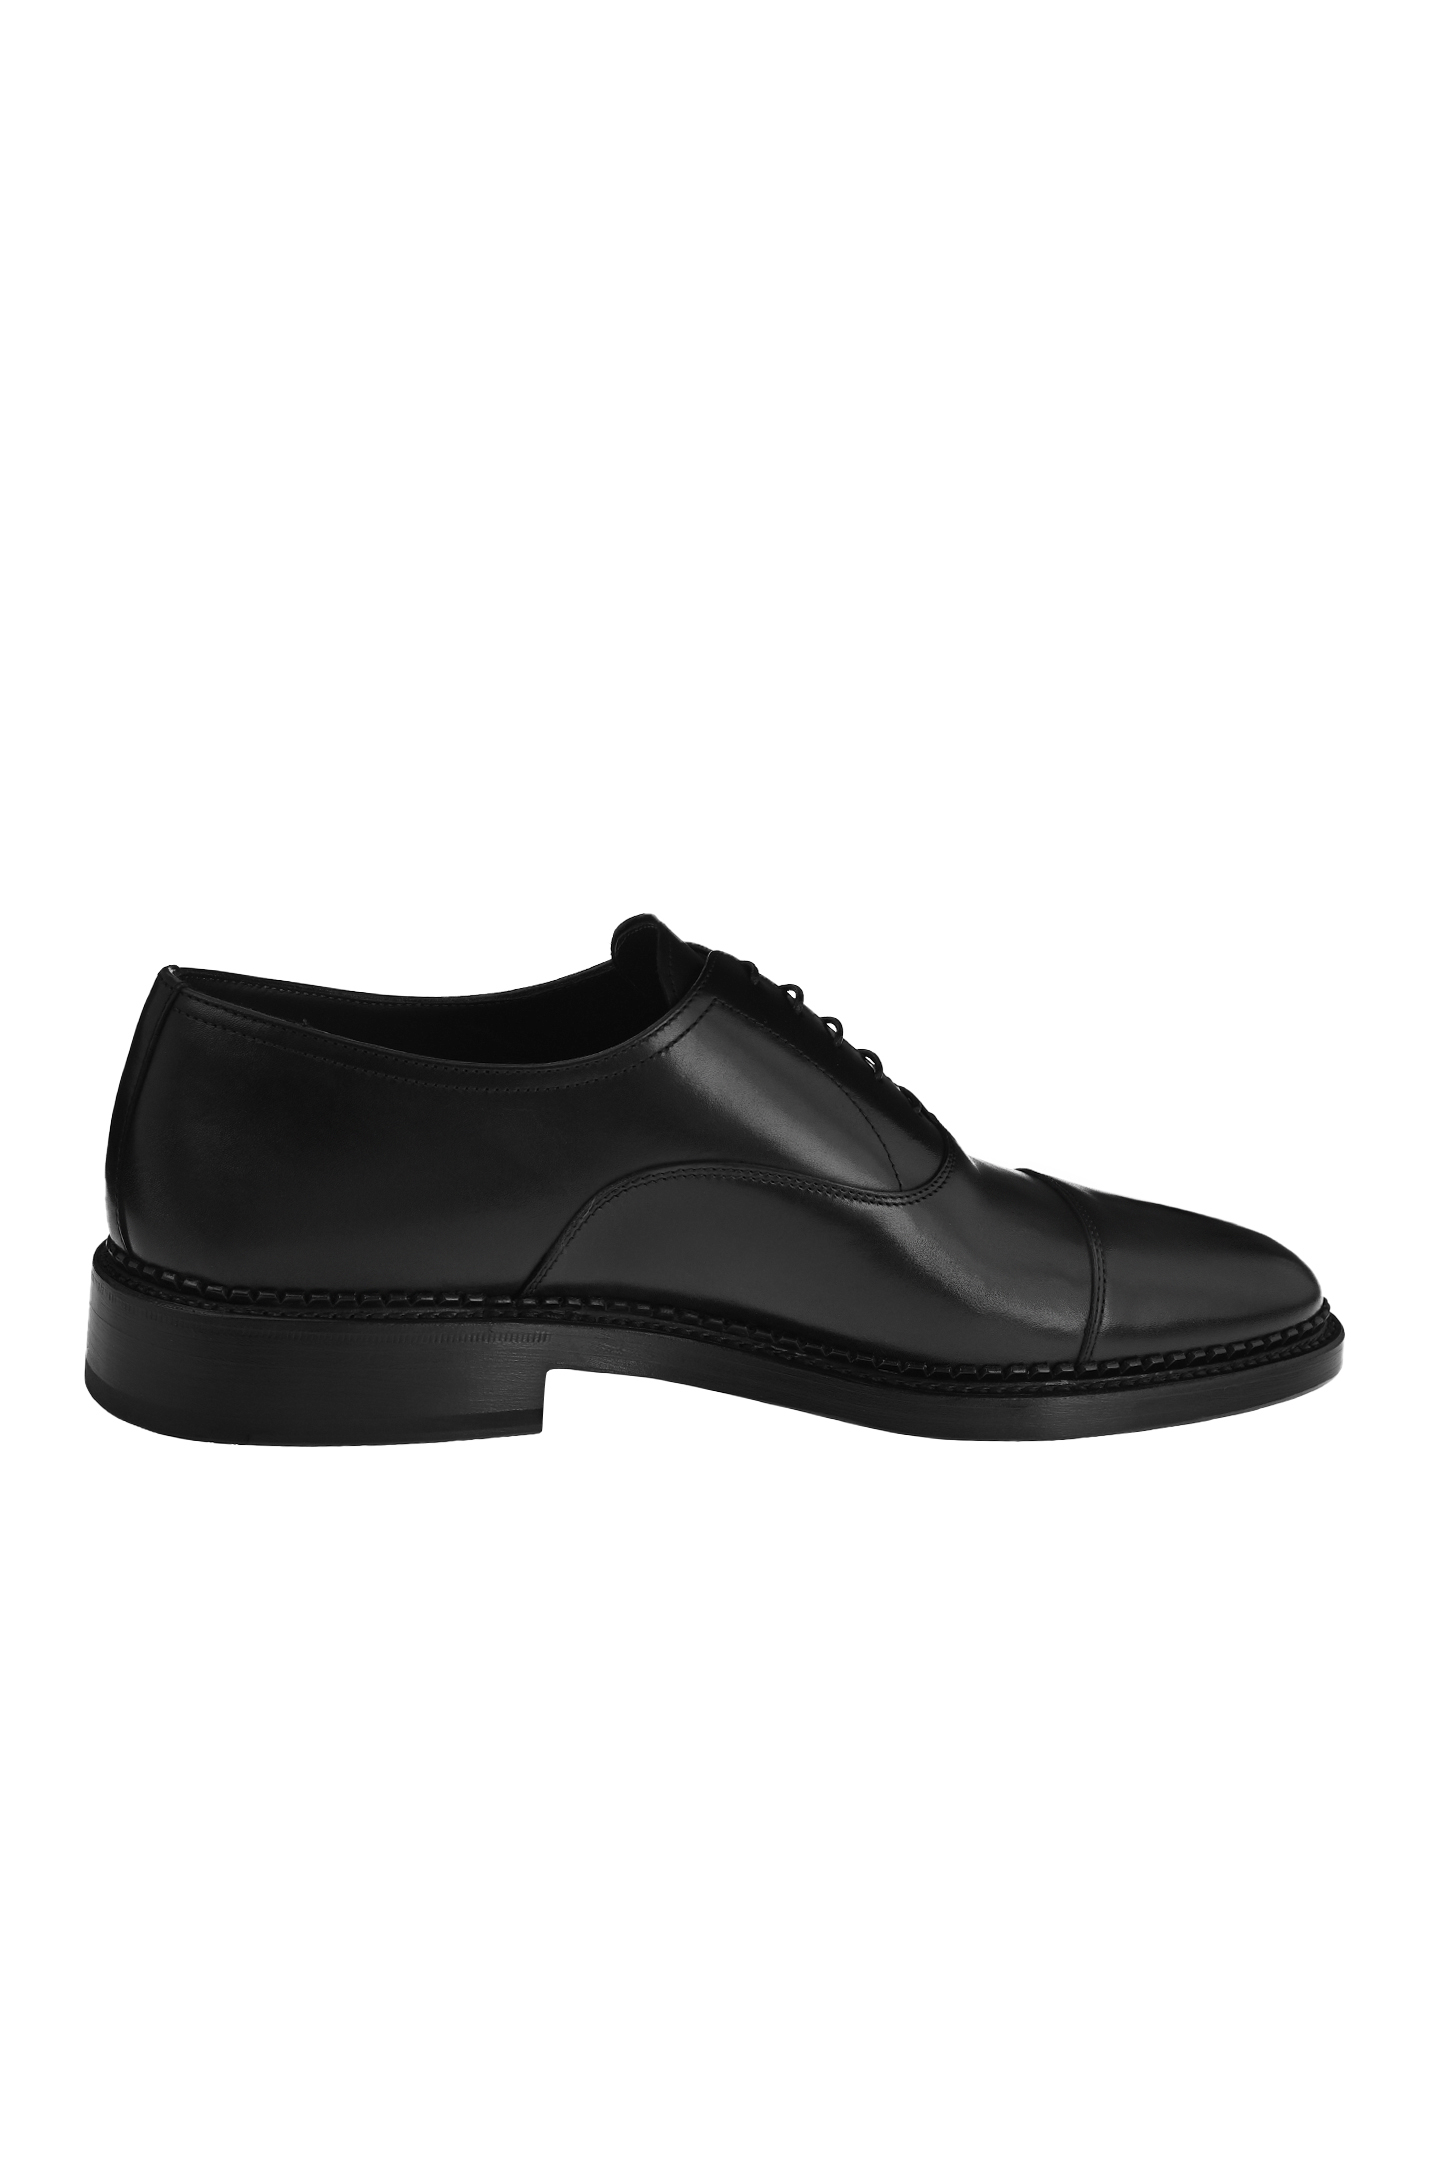 Туфли STEFANO RICCI UE21C6387 VT, цвет: Черный, Мужской